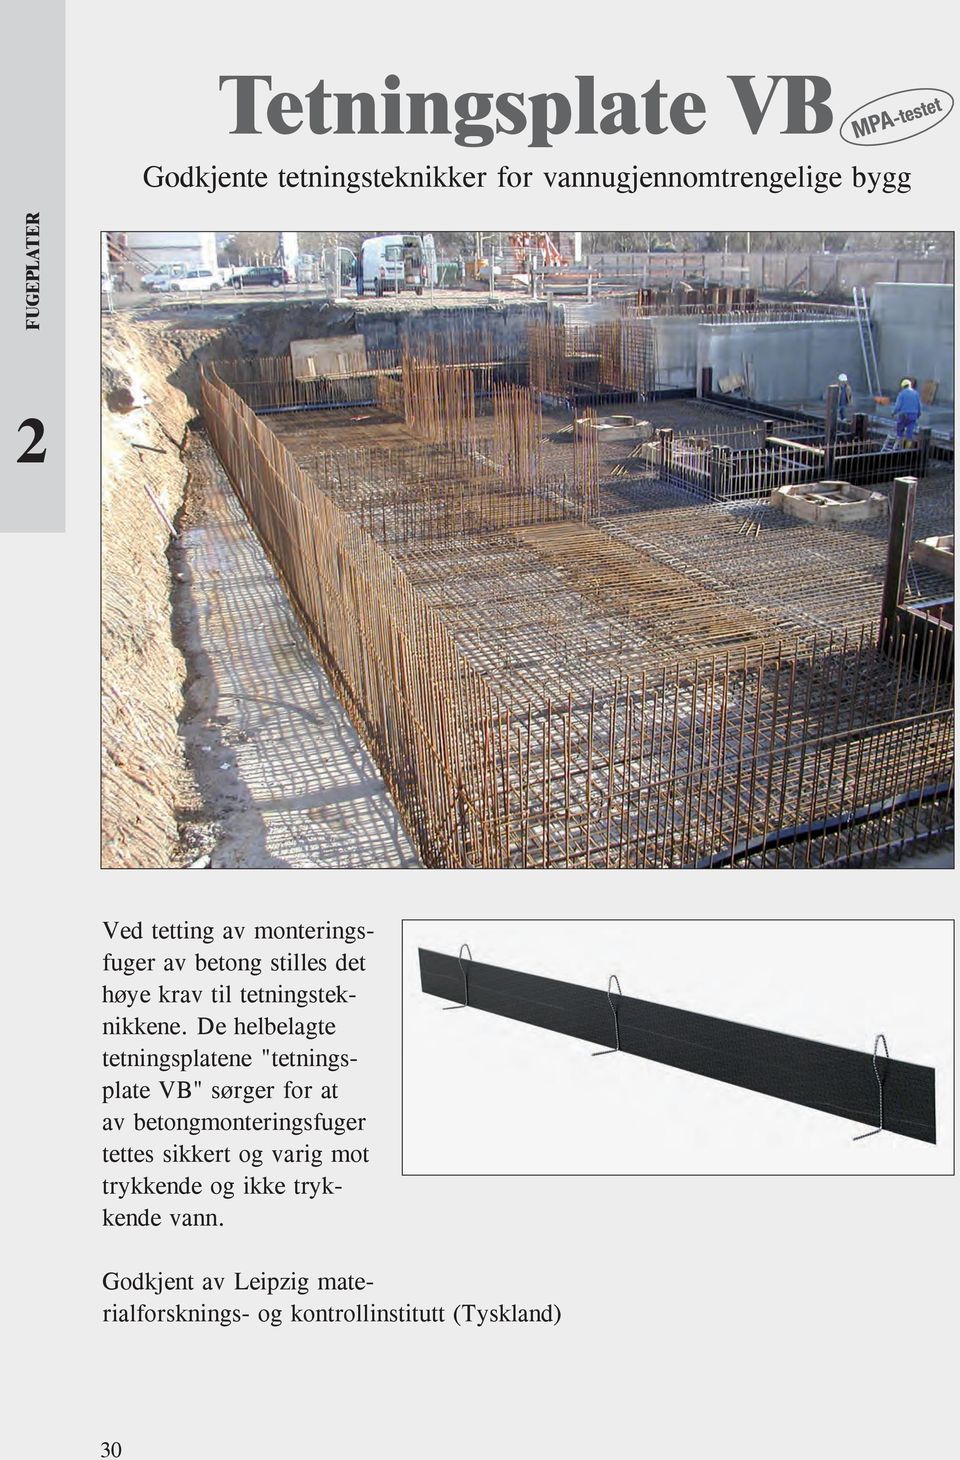 De helbelagte tetningsplatene "tetningsplate VB" sørger for at av betongmonteringsfuger tettes